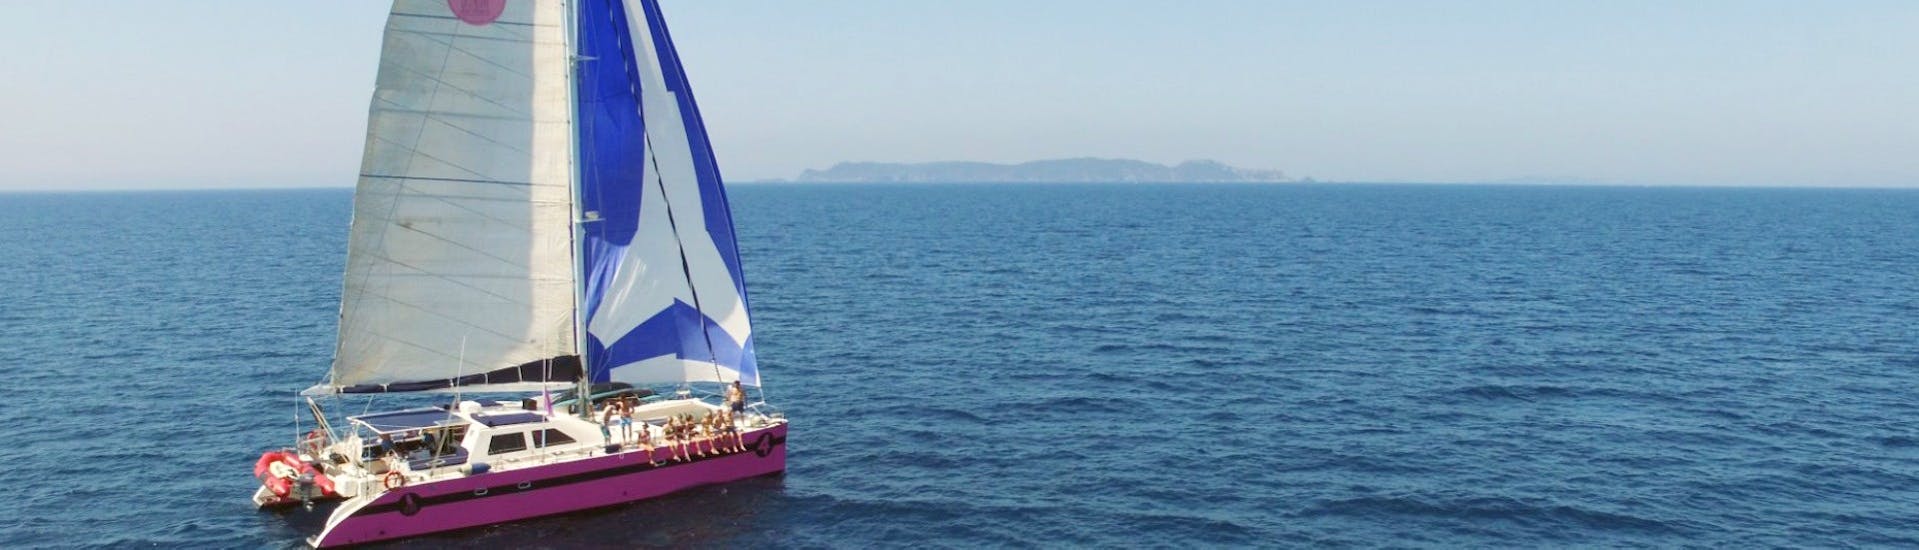 Vistas durante el paseo en catamarán en el golfo de Saint-Tropez desde Sainte-Maxime con Caseneuve Maxi Catamaran.